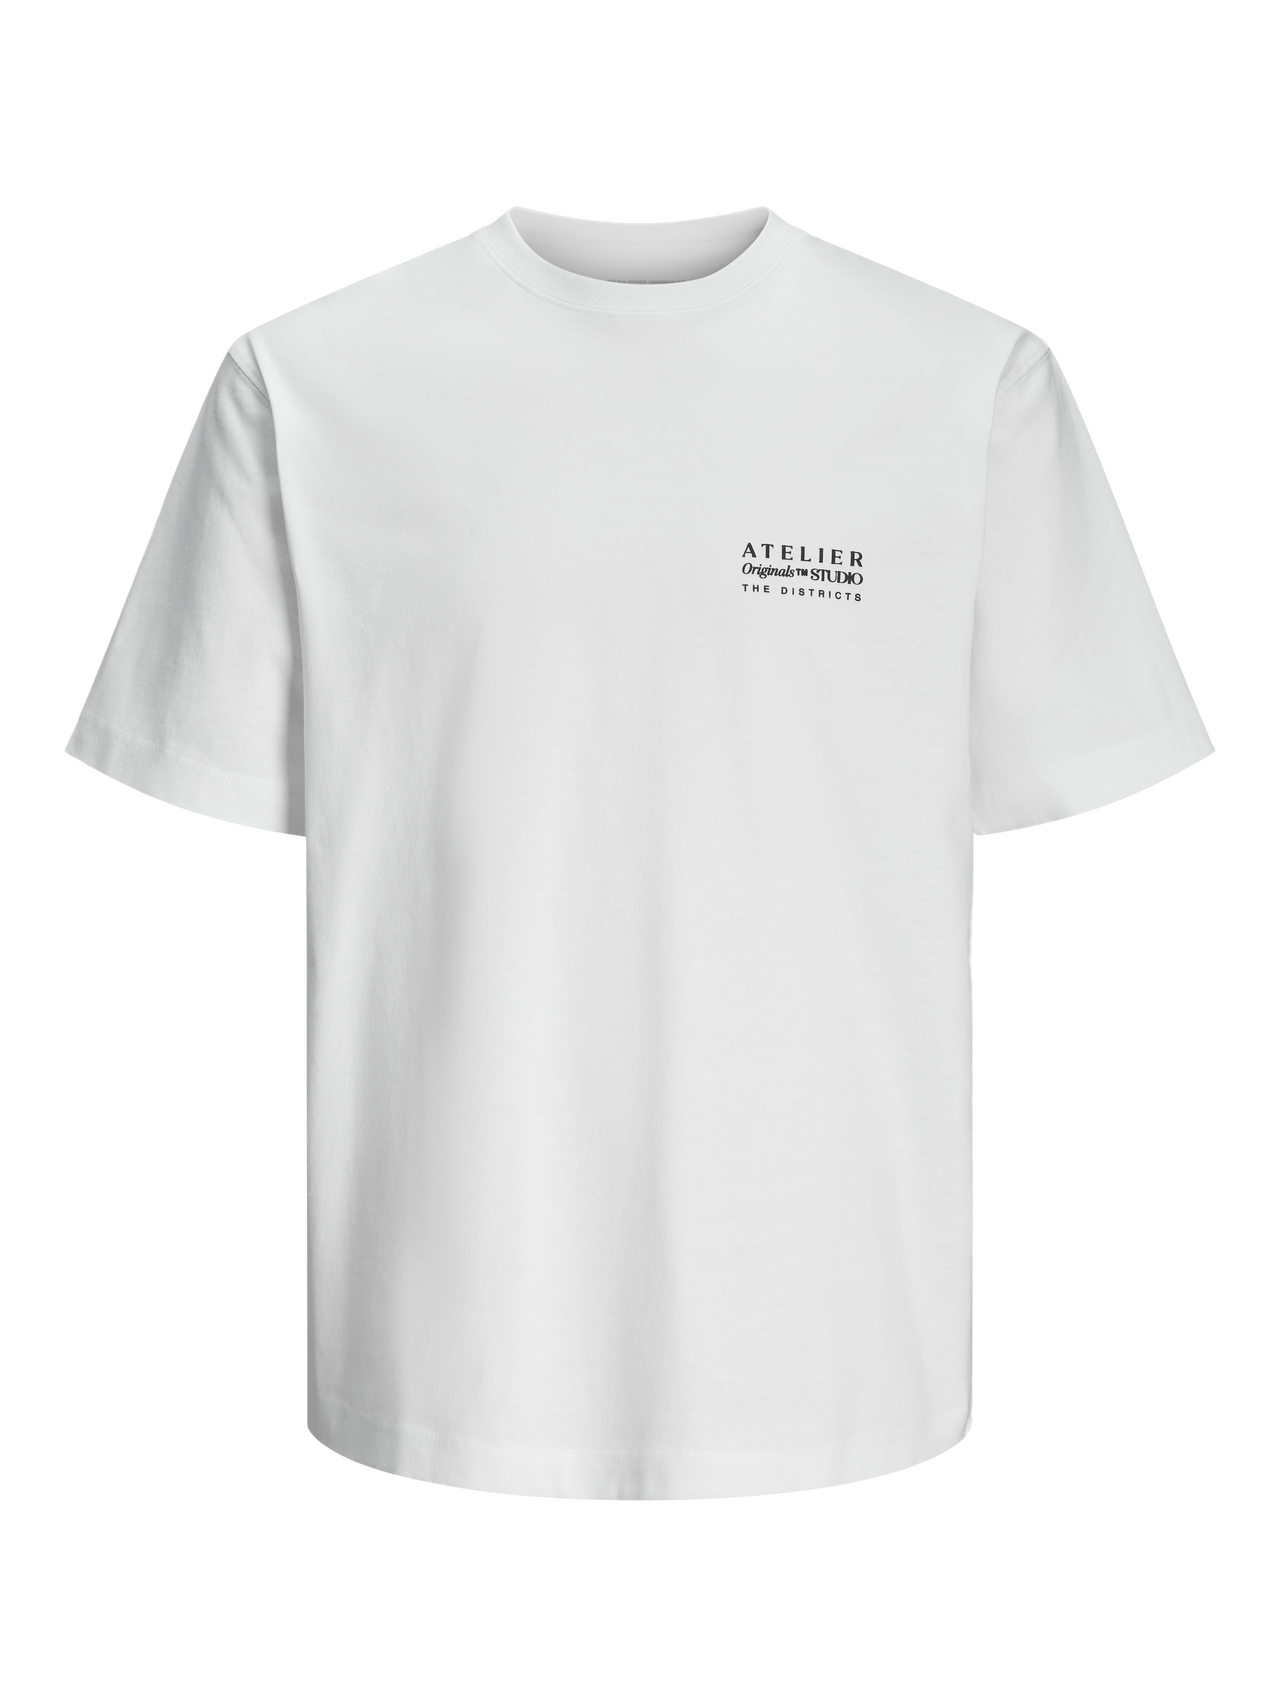 Jack & Jones Gedruckt Rundhals T-shirt -Bright White - 12262503